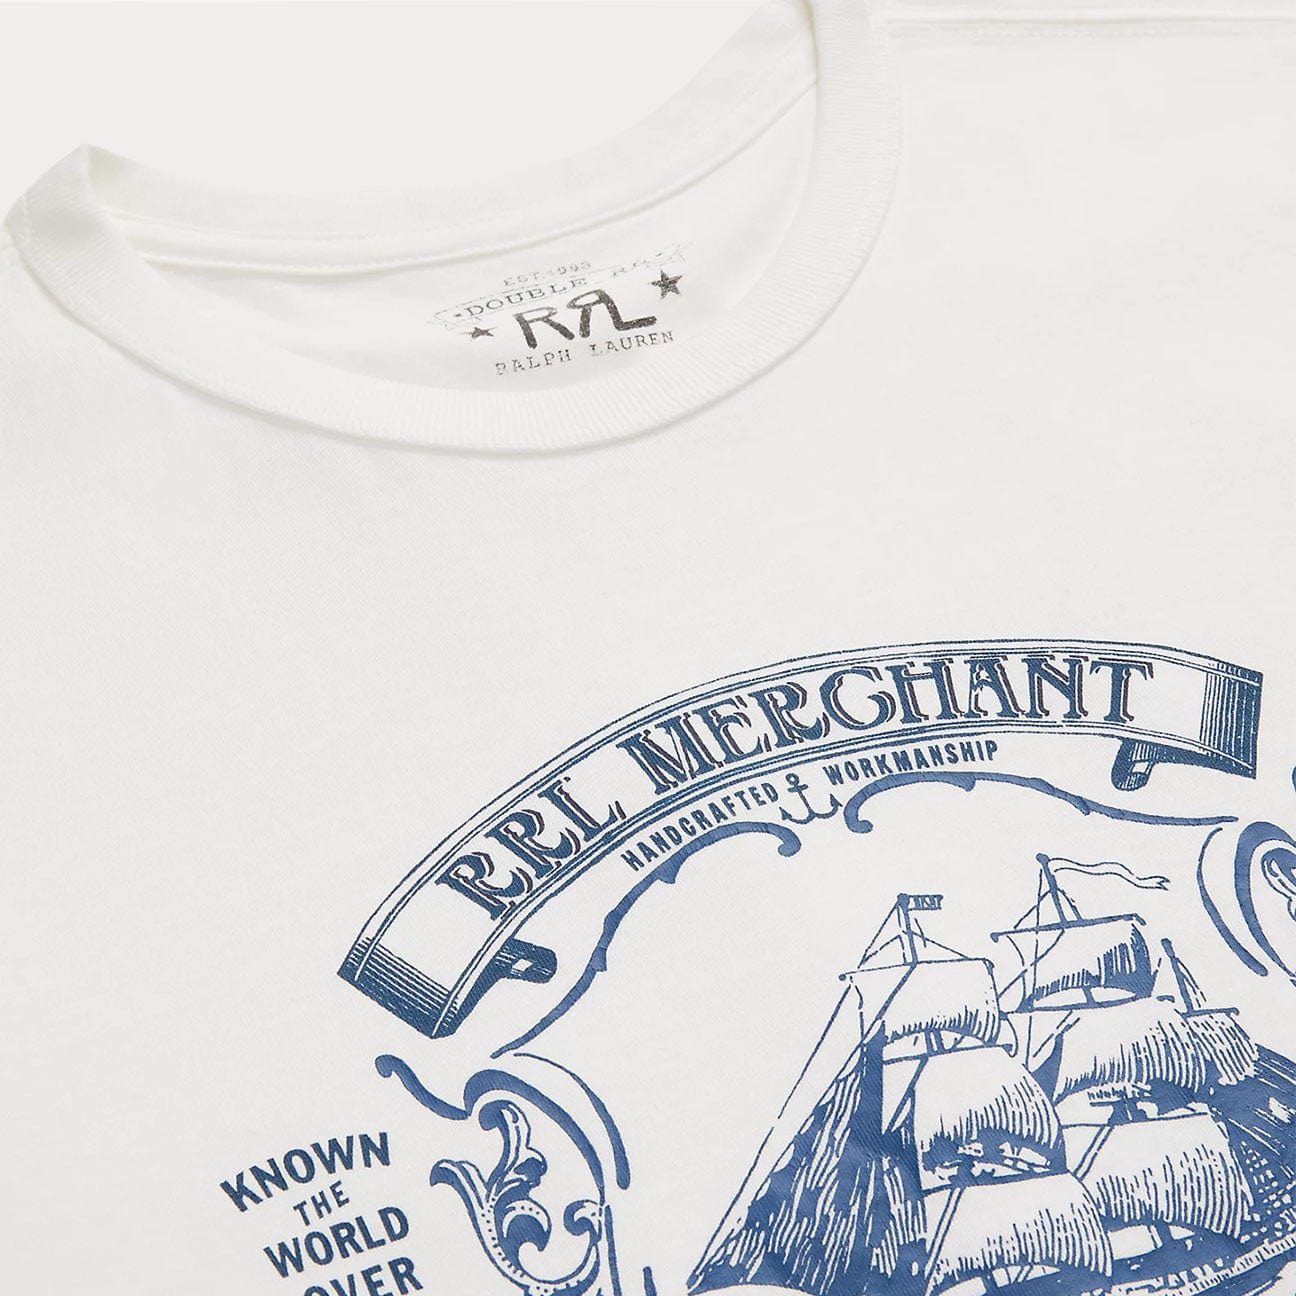 RRL T-Shirt con grafica Bianco